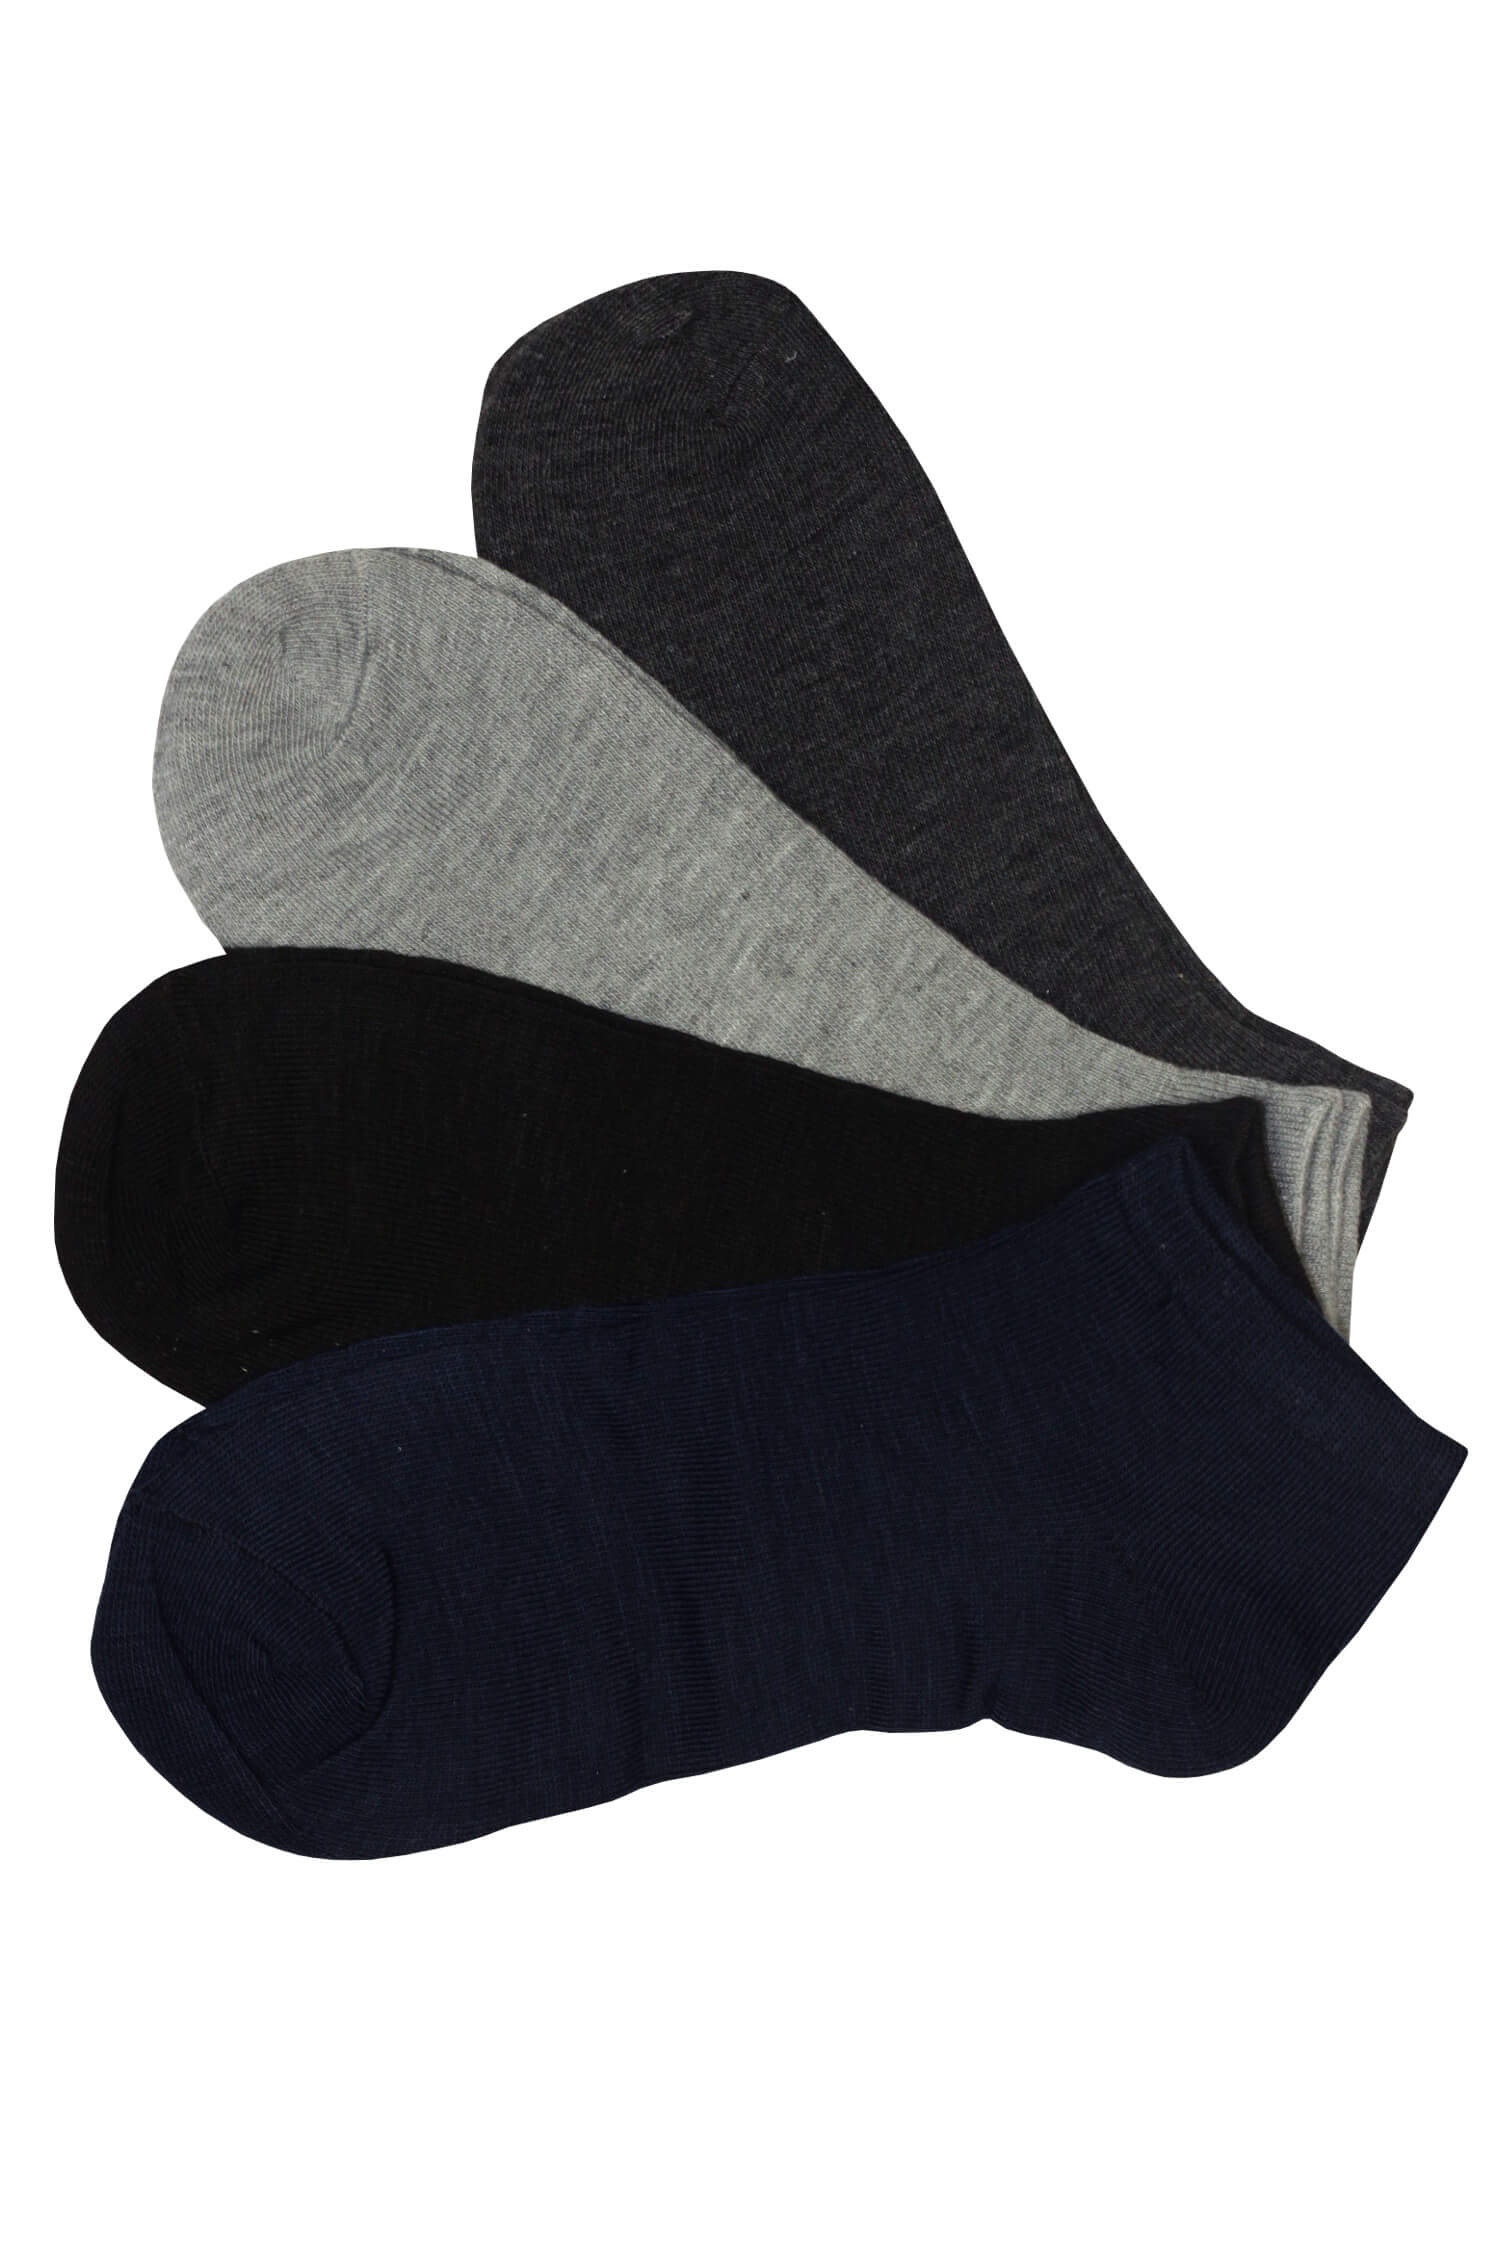 Levné pánské kotníčkové ponožky EM1001B - 3 páry 43-47 vícebarevná